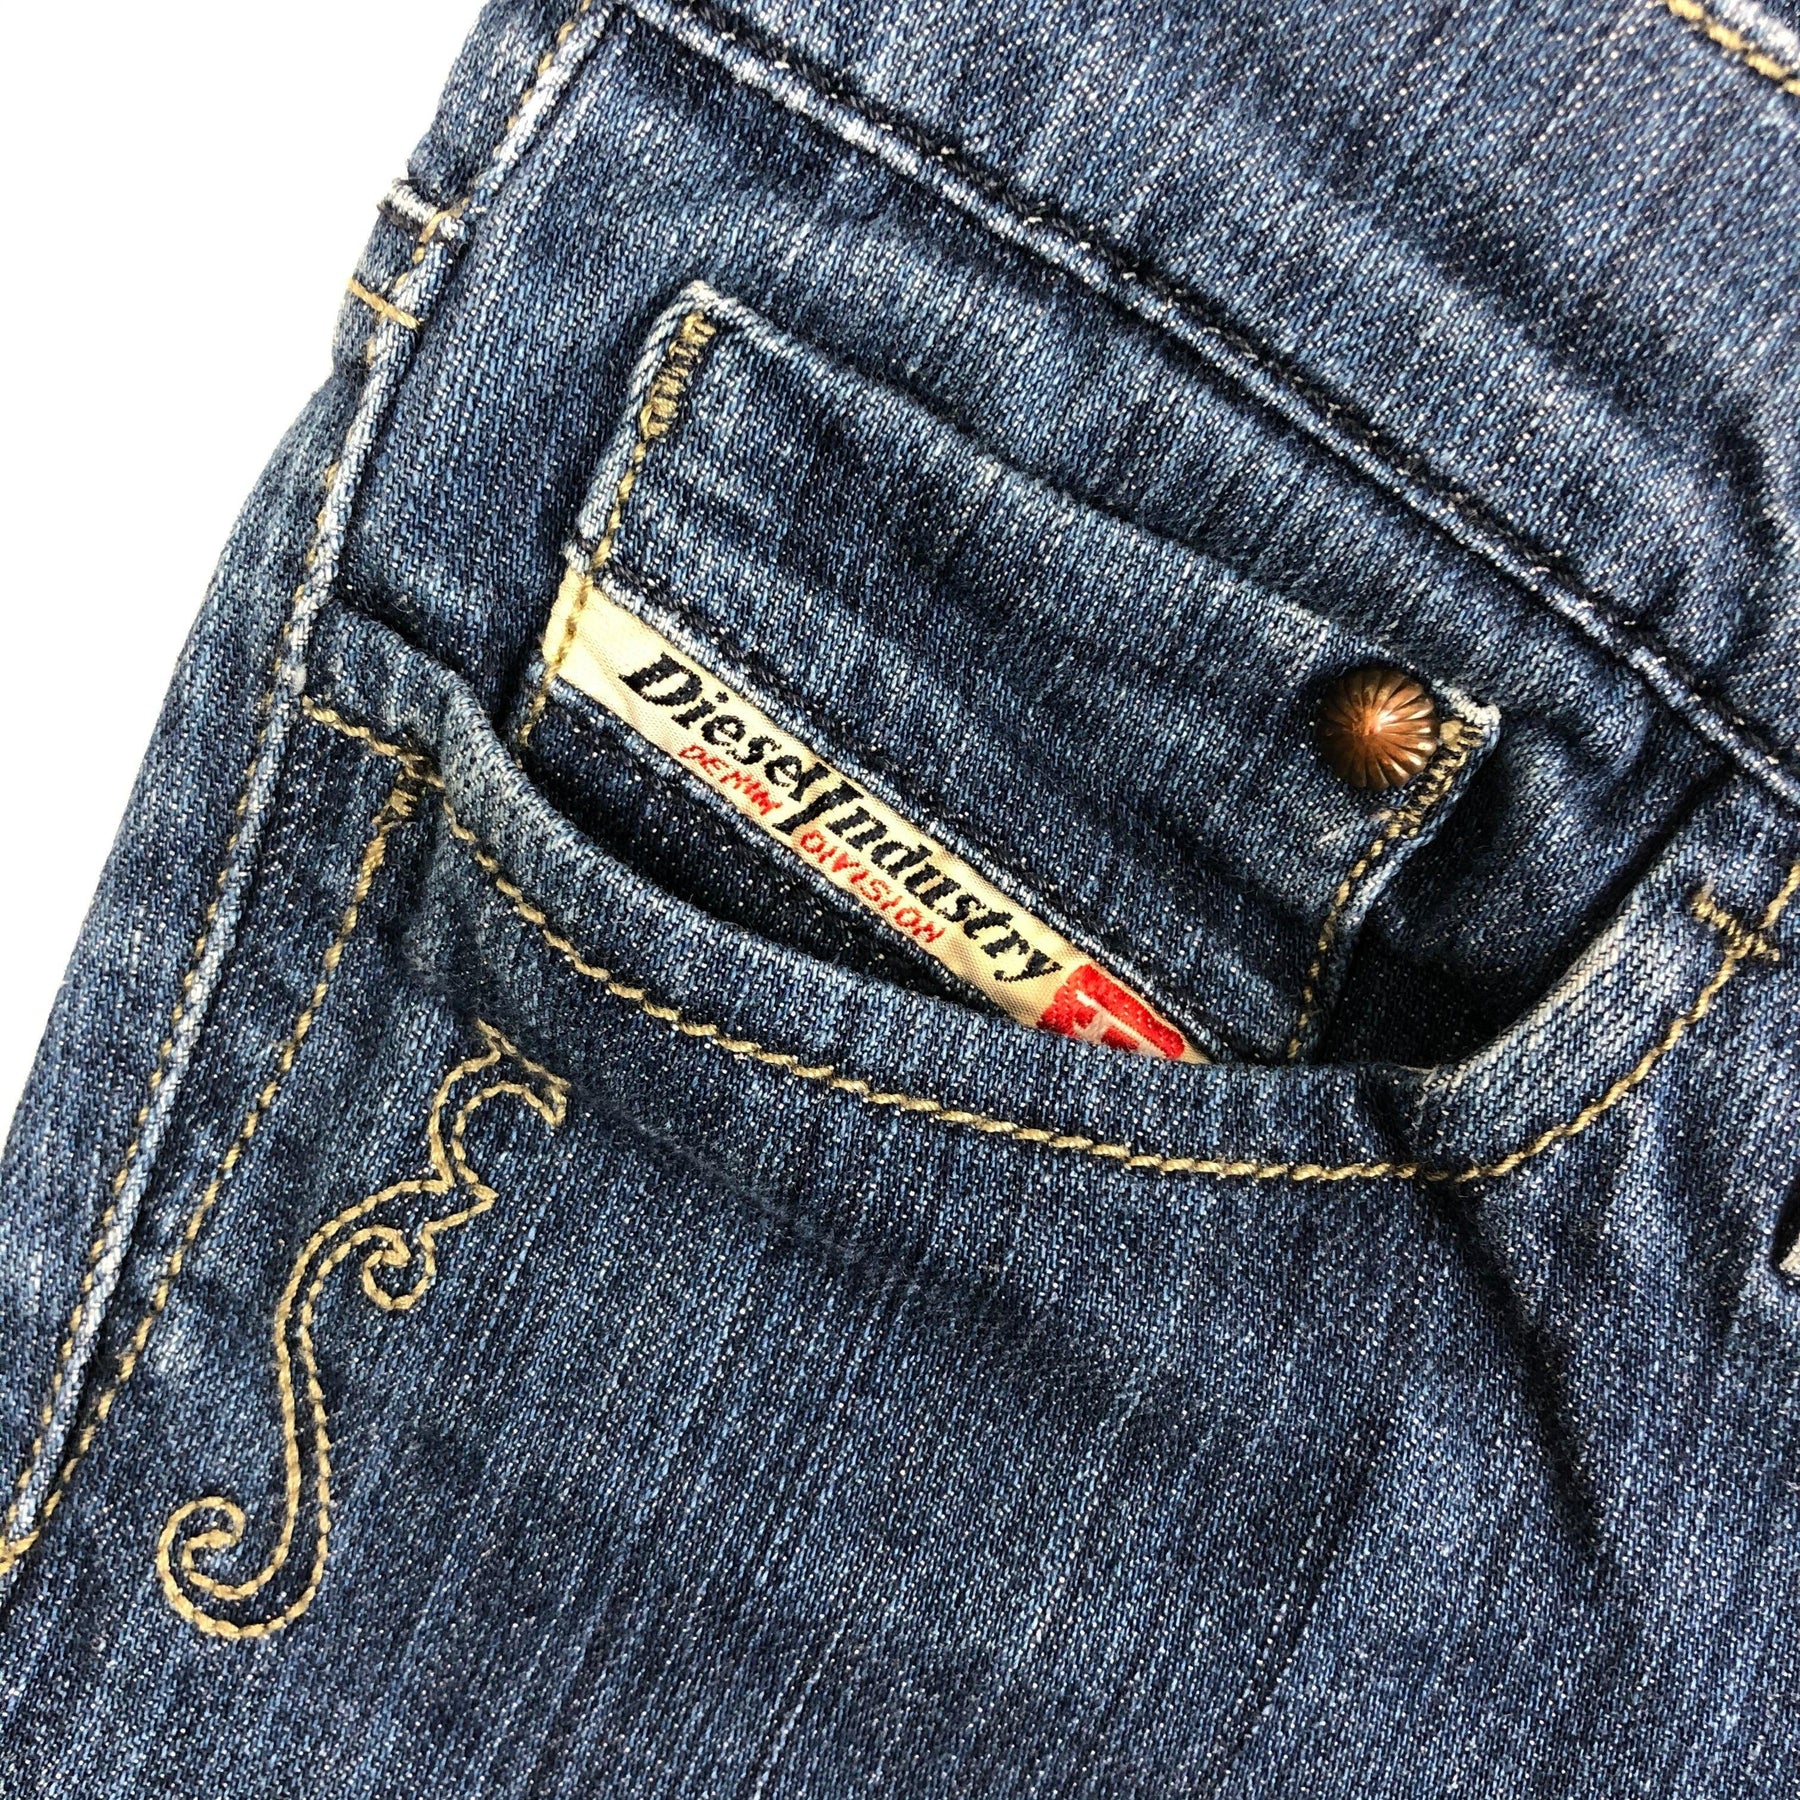 Diesel 'Liv' Slim Embroidered Pocket Denim Jeans Size 25/32 Jean Pool